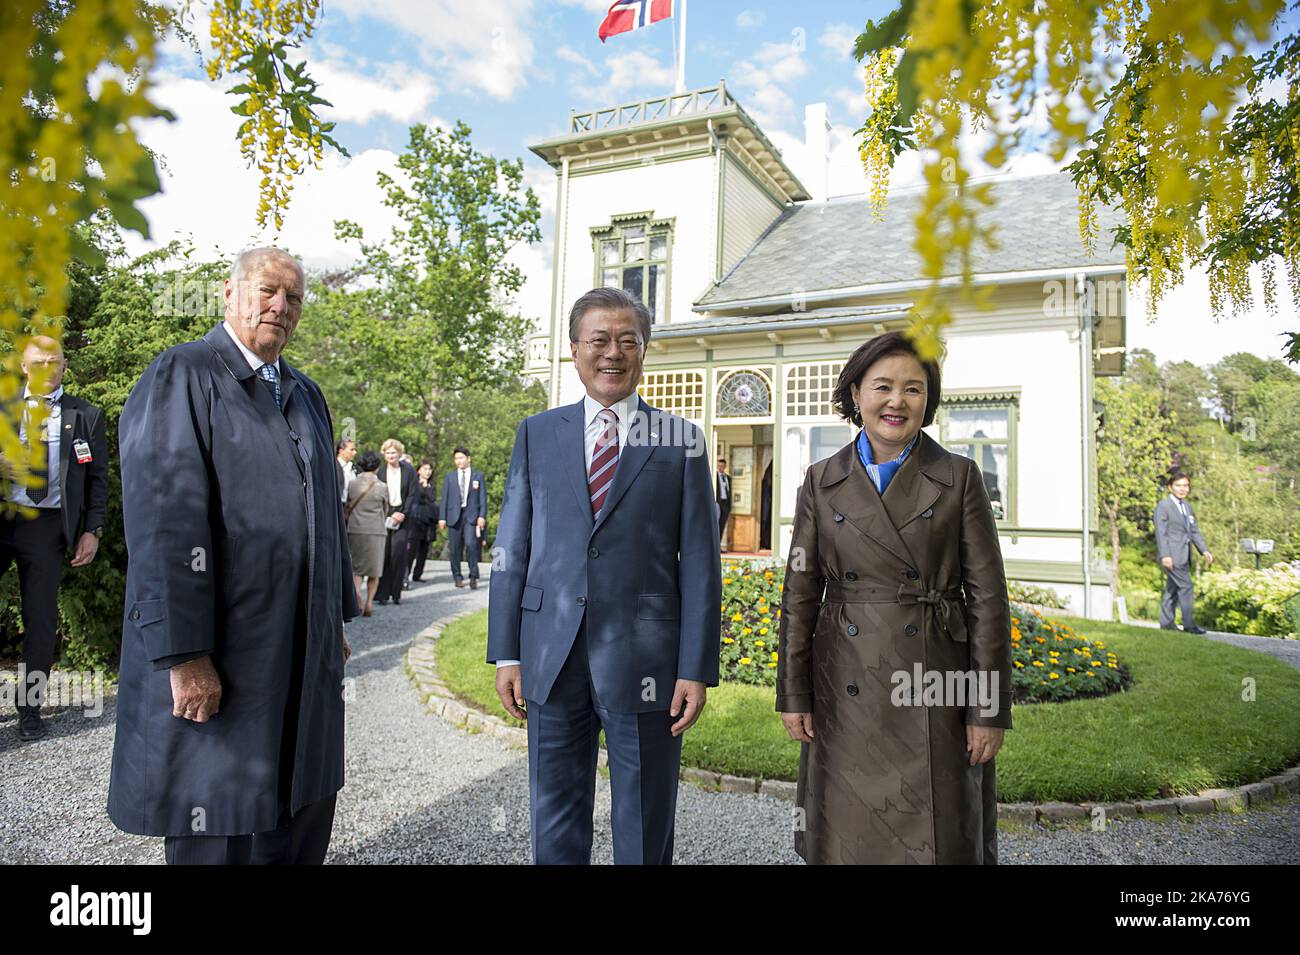 Il re norvegese Harald (L) con il presidente sudcoreano Moon Jae-in (C) e sua moglie Kim Jung-sook durante la loro vista alla casa del compositore Edvard Grieg a Bergen, 13 giugno 2019. Foto di Marit Hommedal, NTB scanpix Foto Stock